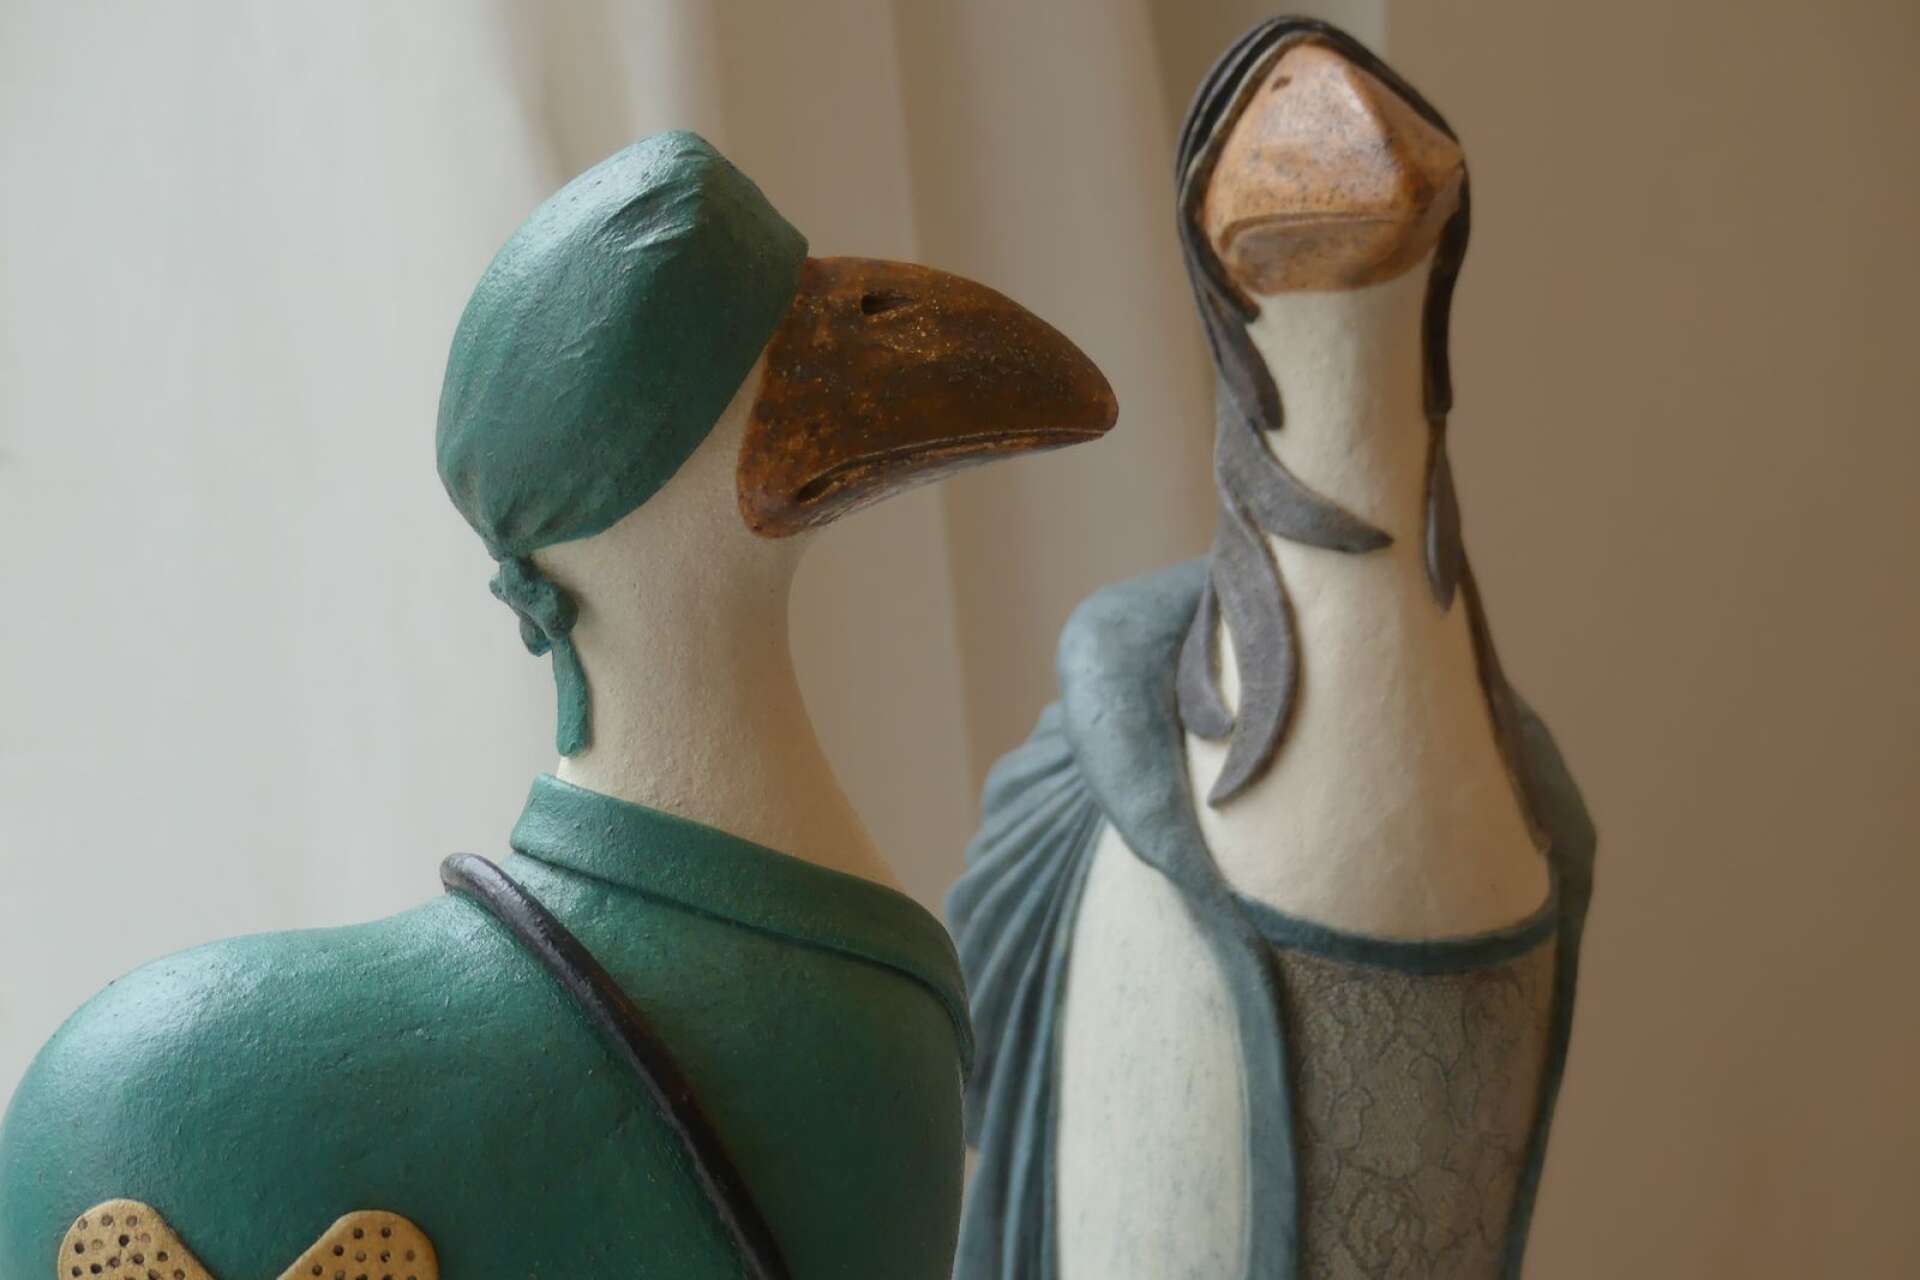 Uttrycksfulla fåglar i stengods är några av de verk som ställs ut på Galleri 2.